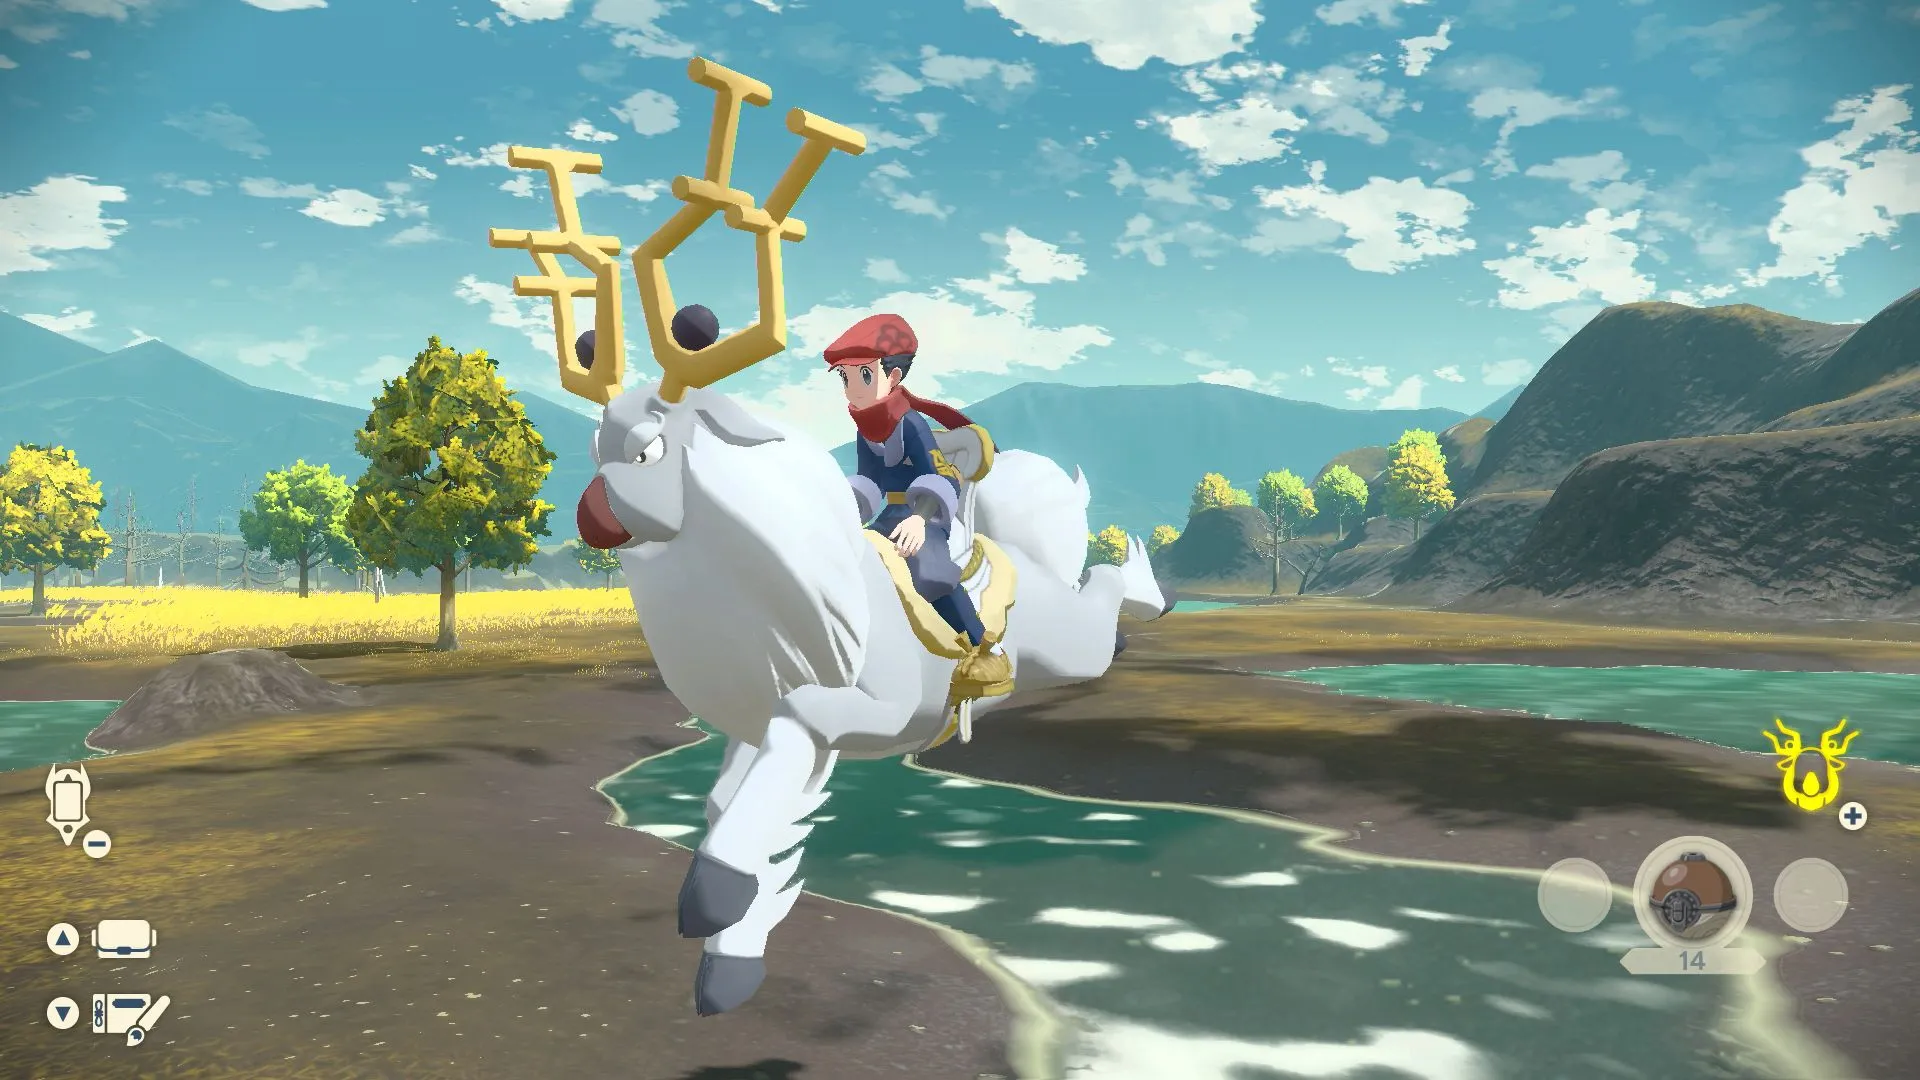 Pokémon Legends Arceus: Jogo pode não ter mundo aberto